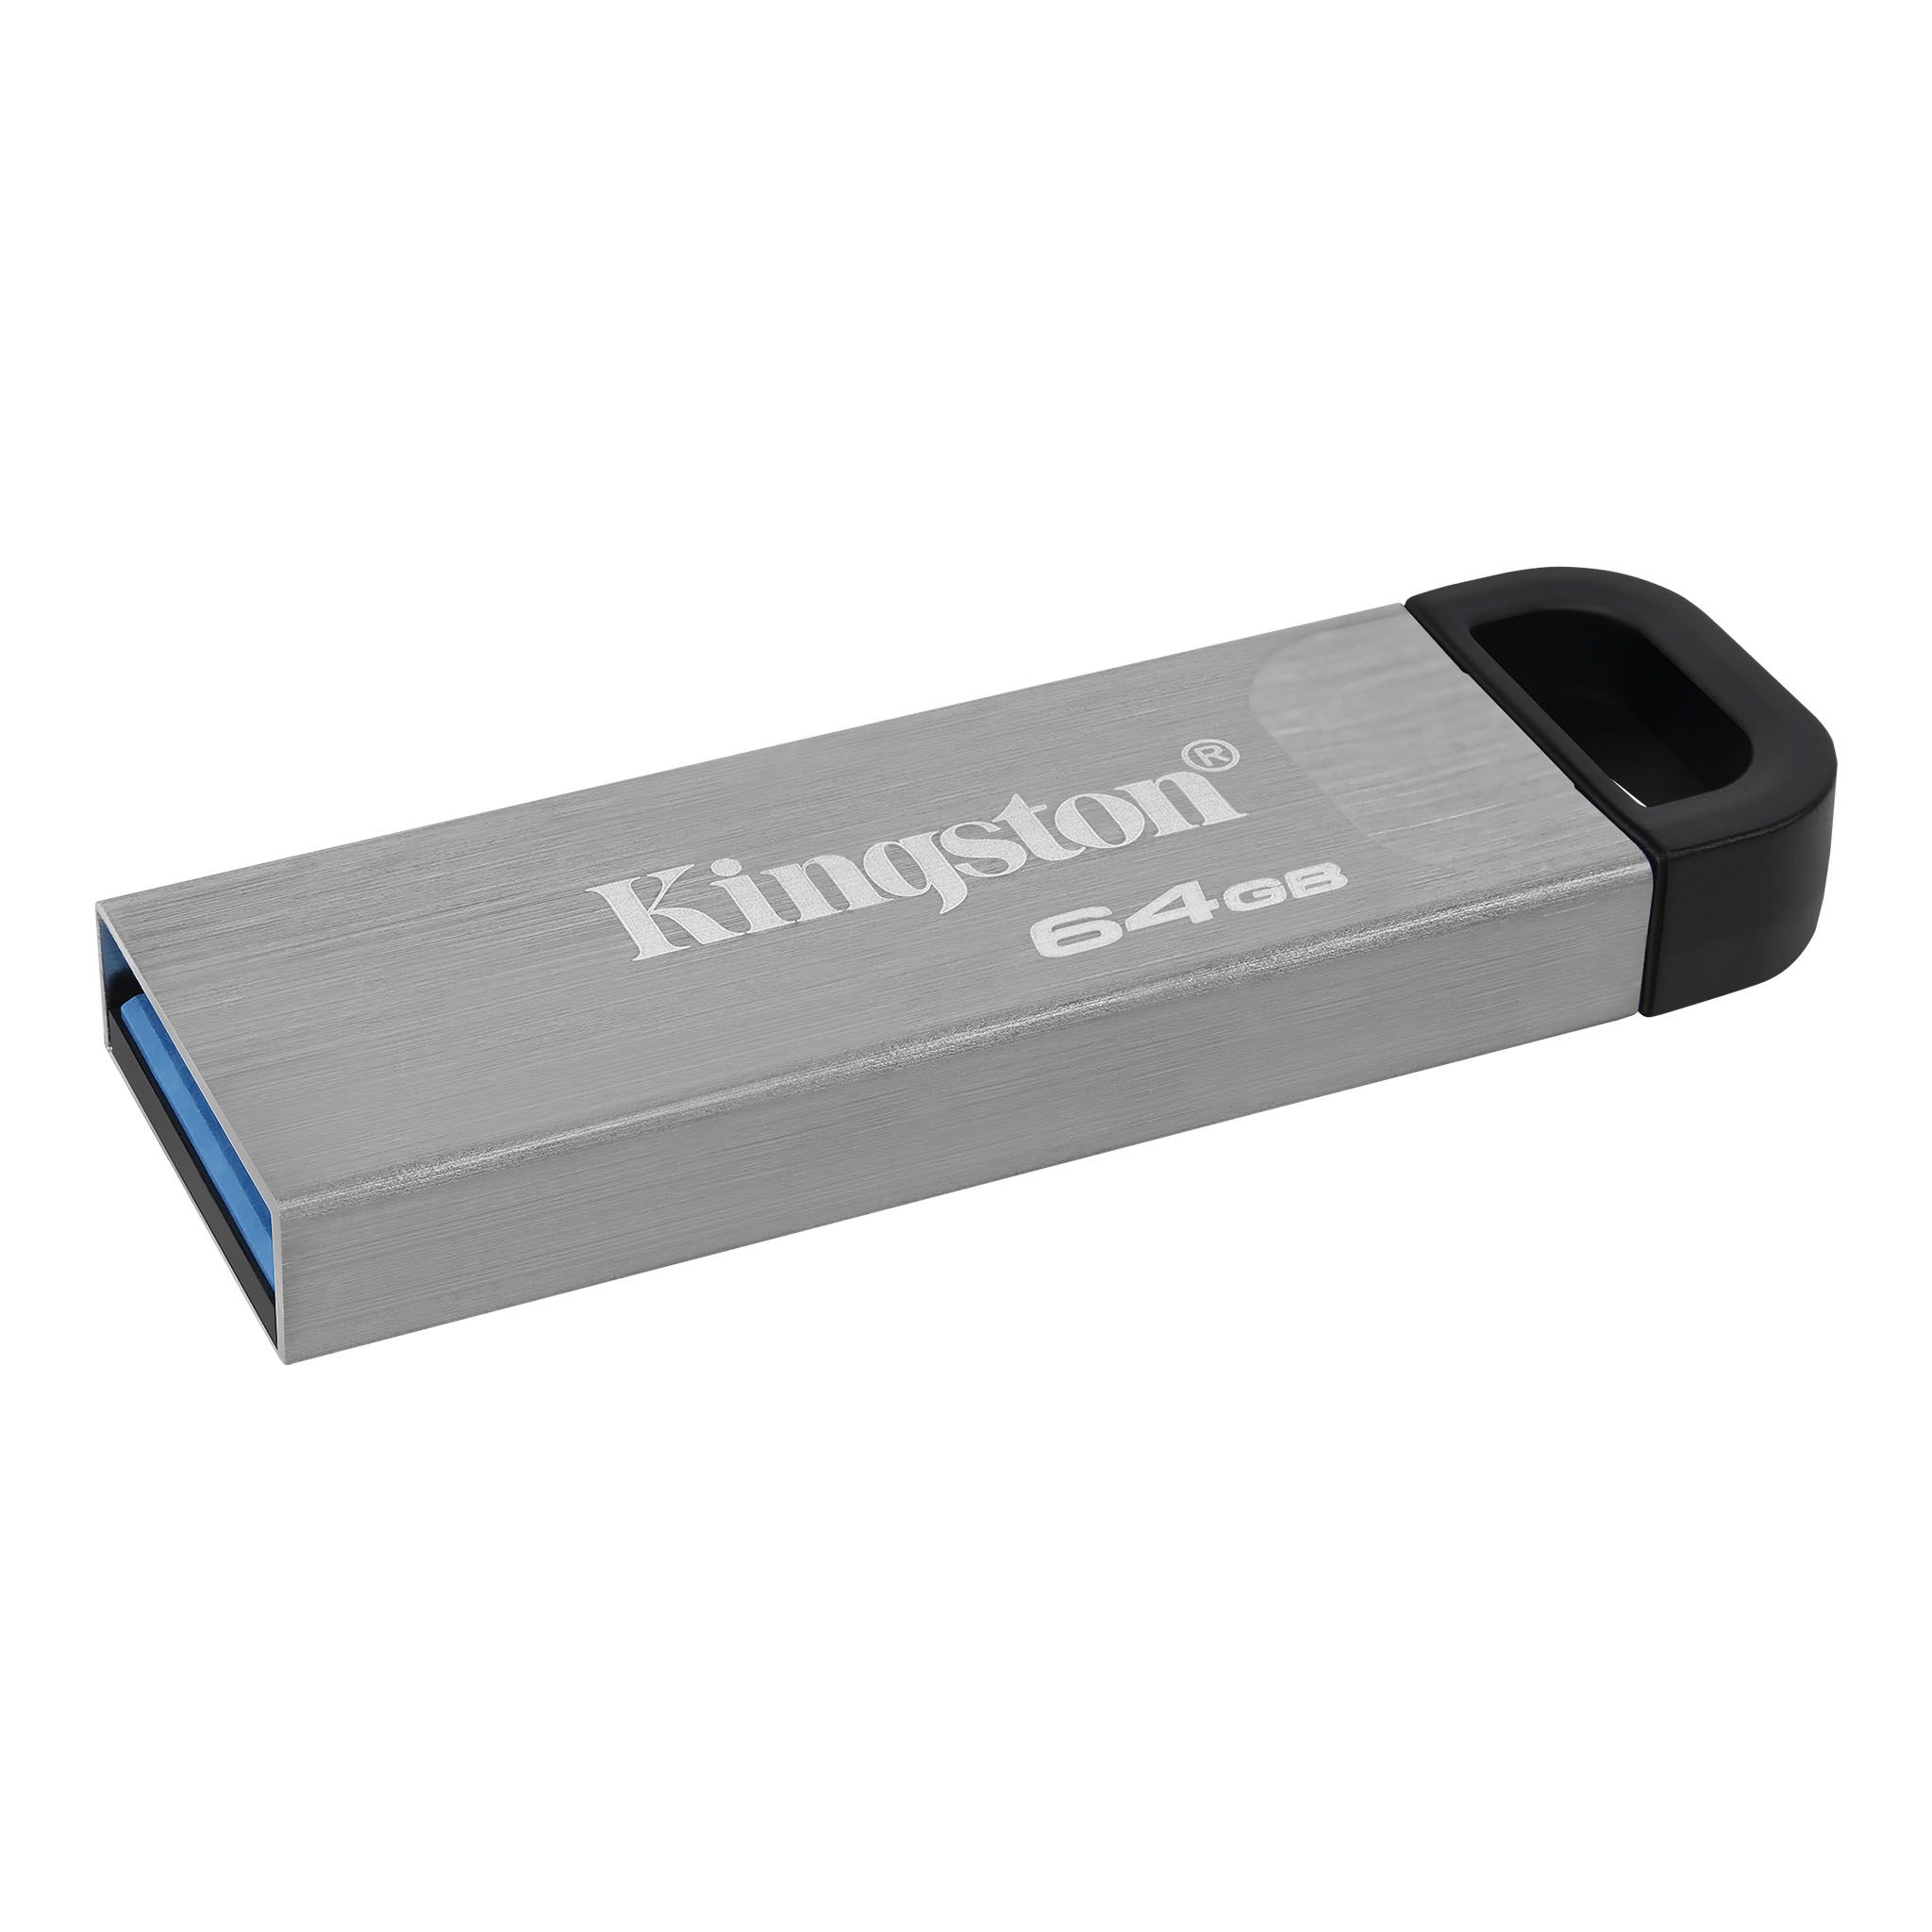 Kyson USBフラッシュドライブ– 32GB 256GB Kingston Technology